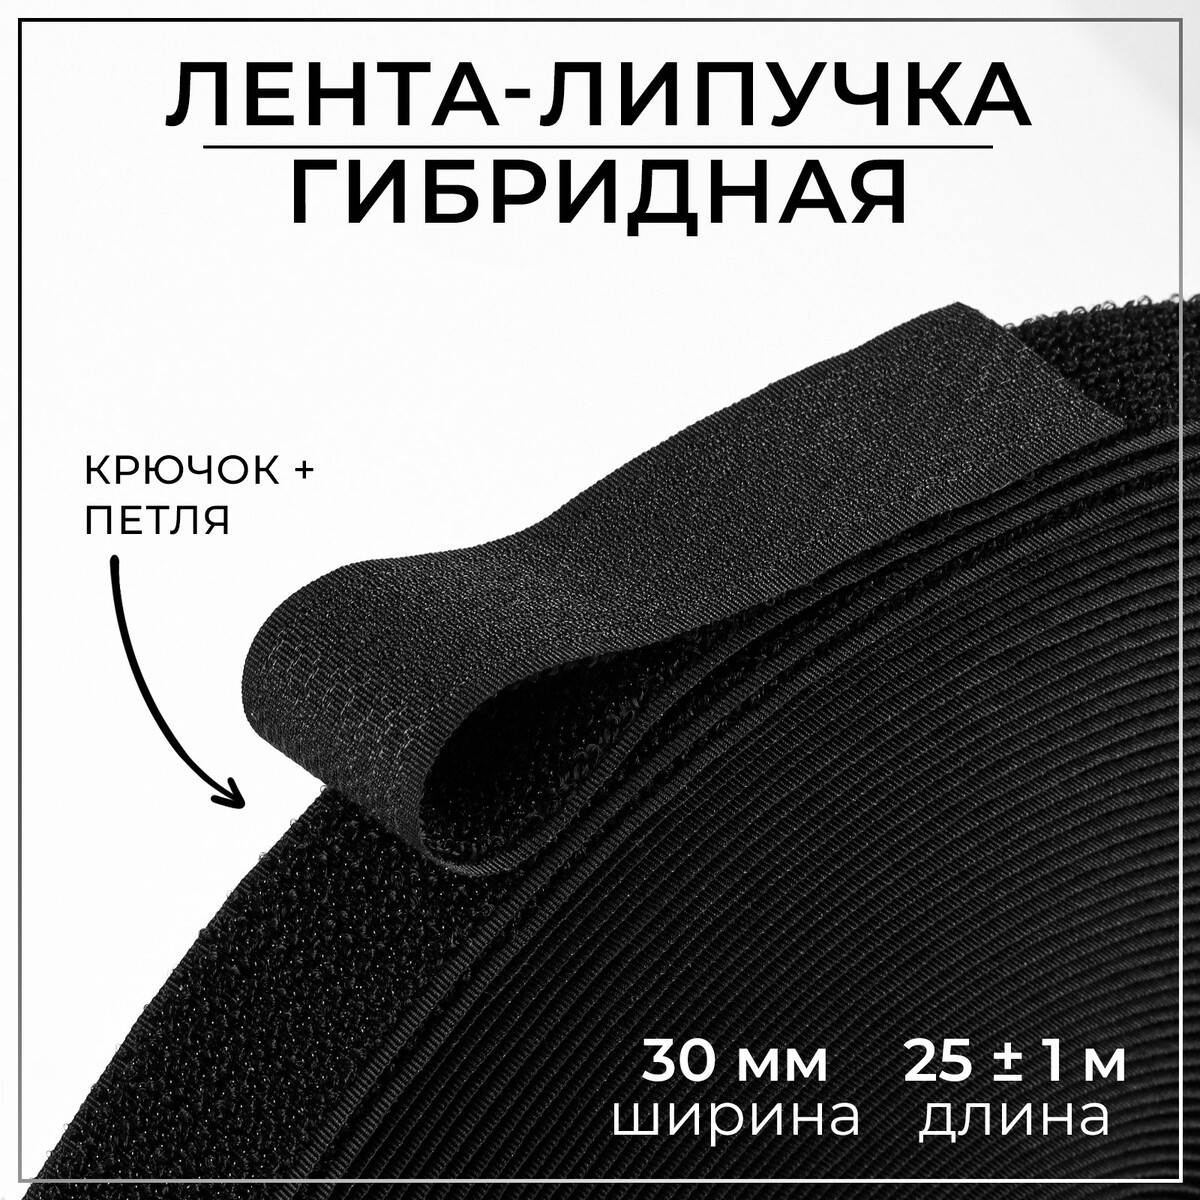 Липучка гибридная, 30 мм × 25 ± 1 м, цвет черный липучка 30 мм × 25 ± 1 м